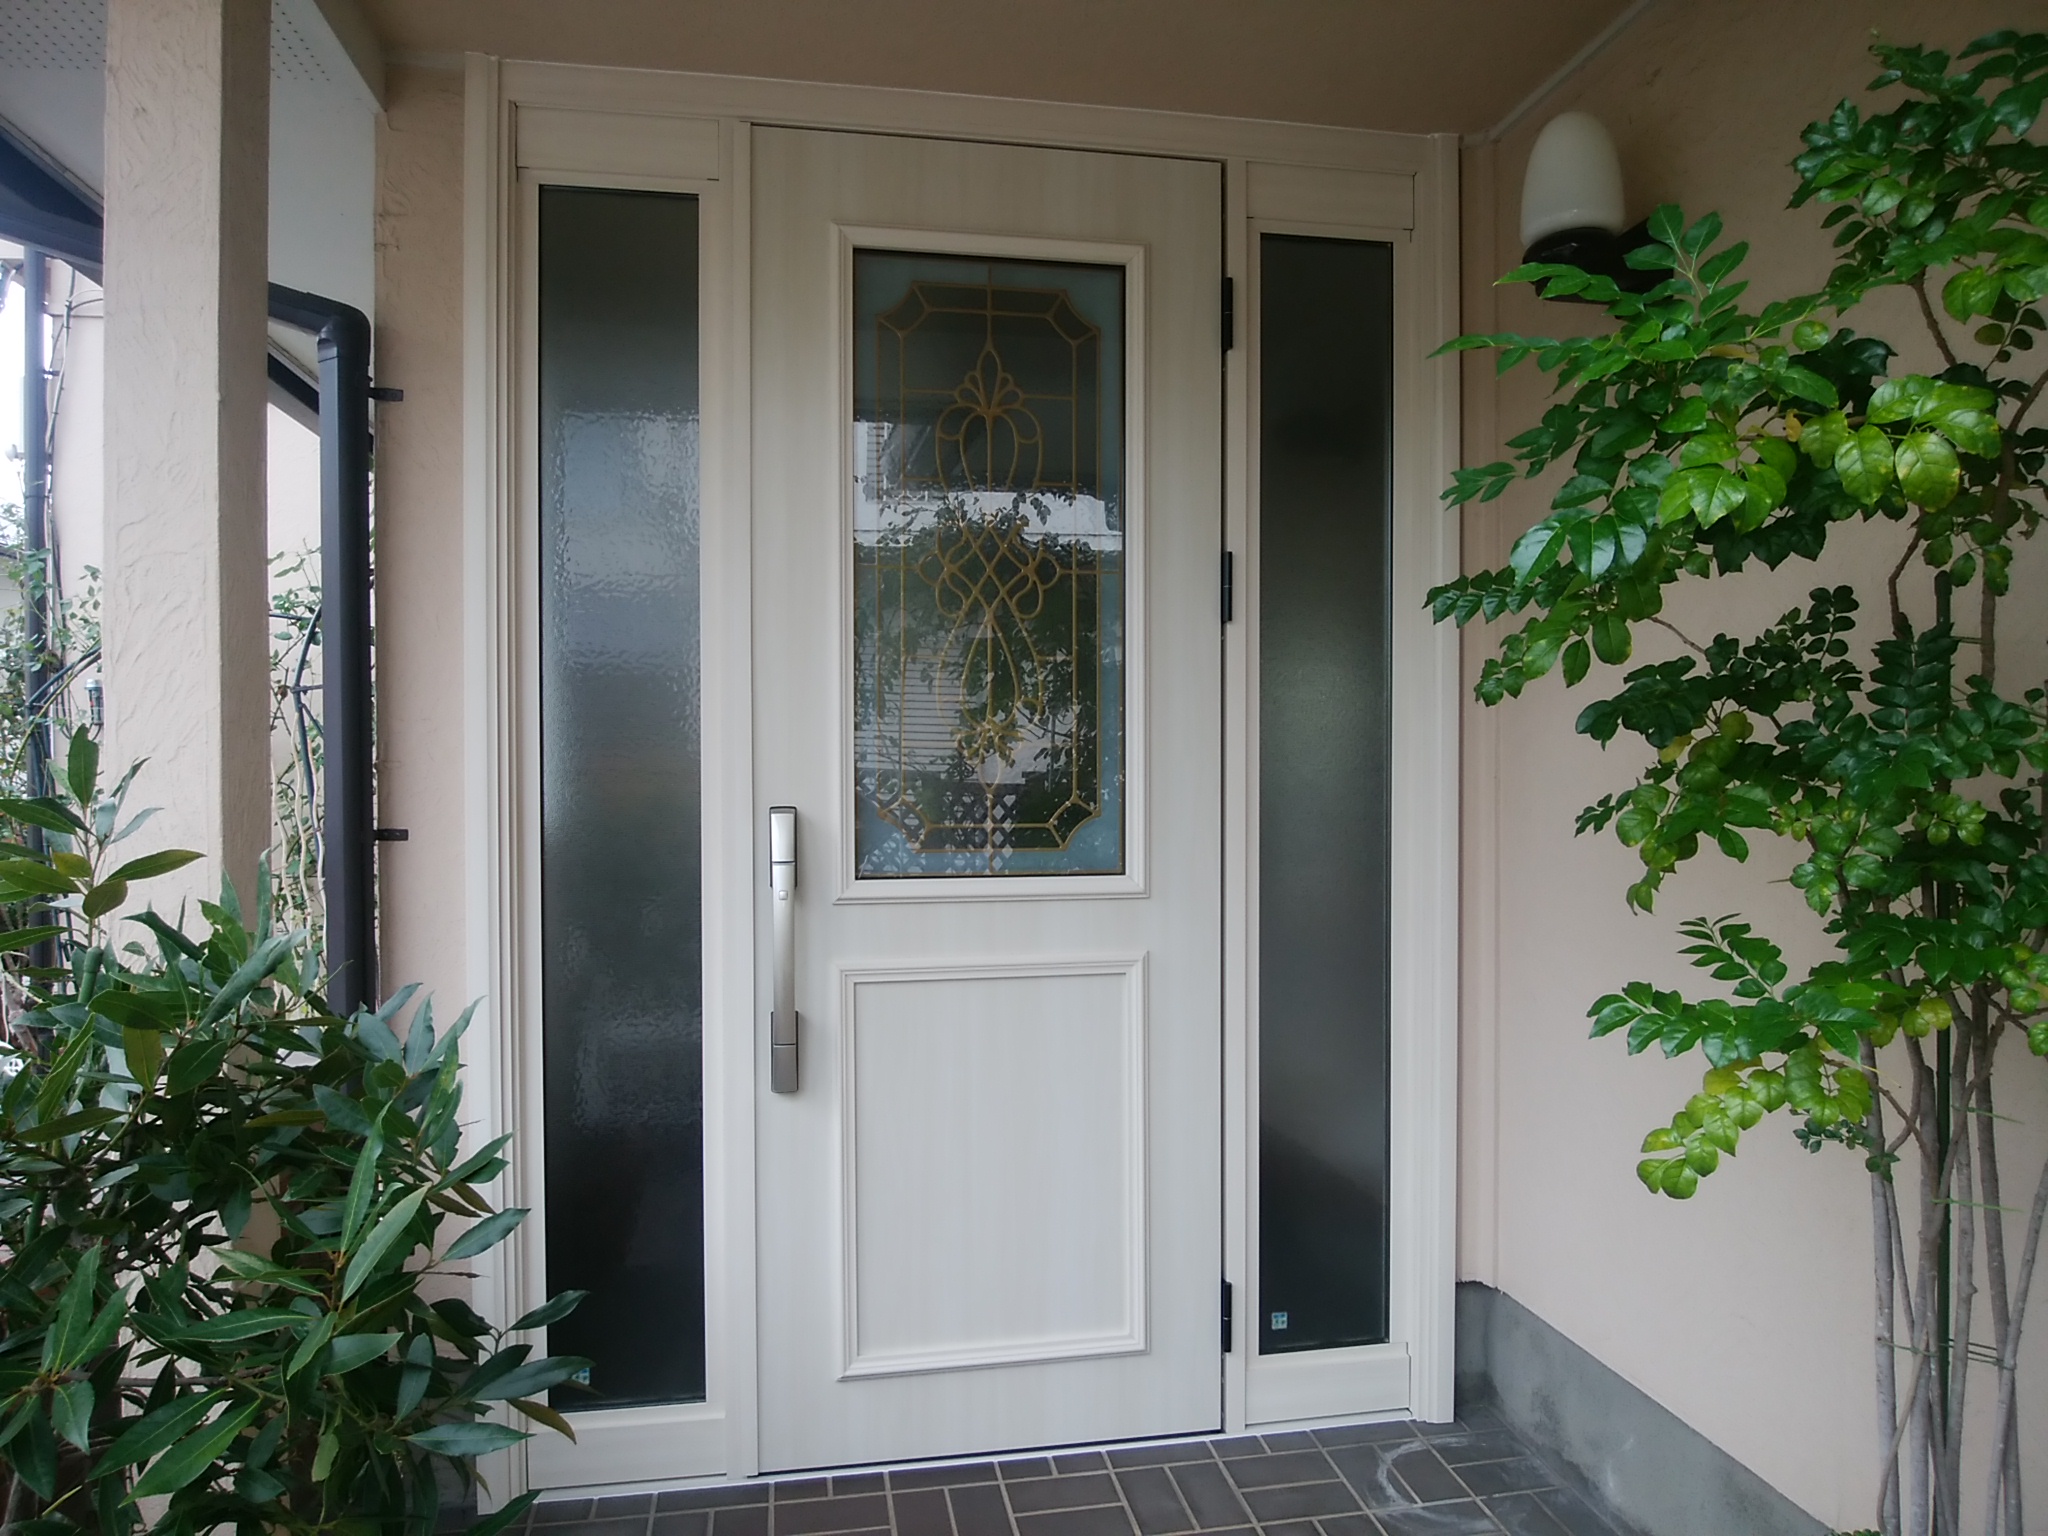 ステンドガラス調のデザインガラスが入った洋風ドアにリフォーム Ykkapドアリモe07 玄関ドアのリフォームなら玄関ドアマイスターへお任せください